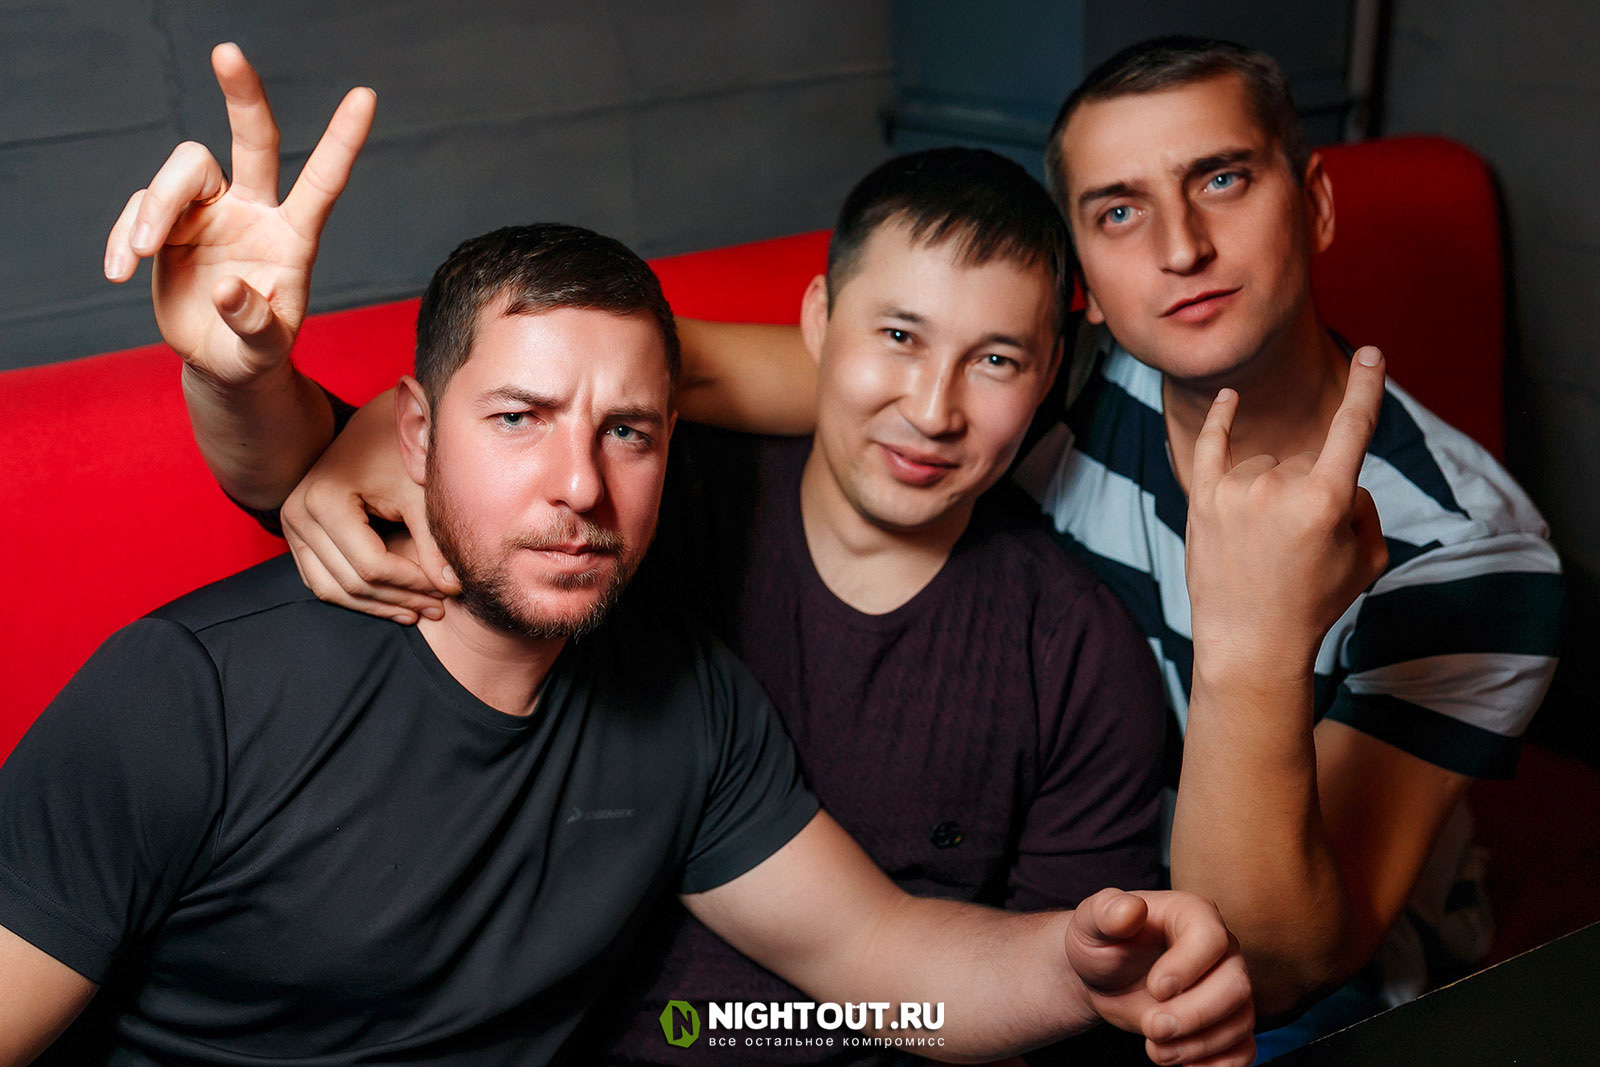 Nightout Новосибирск. Nightout фотоотчеты. Найтаут Барнаул фотоотчет. Найтаут Барнаул фотоотчет 2014 года.